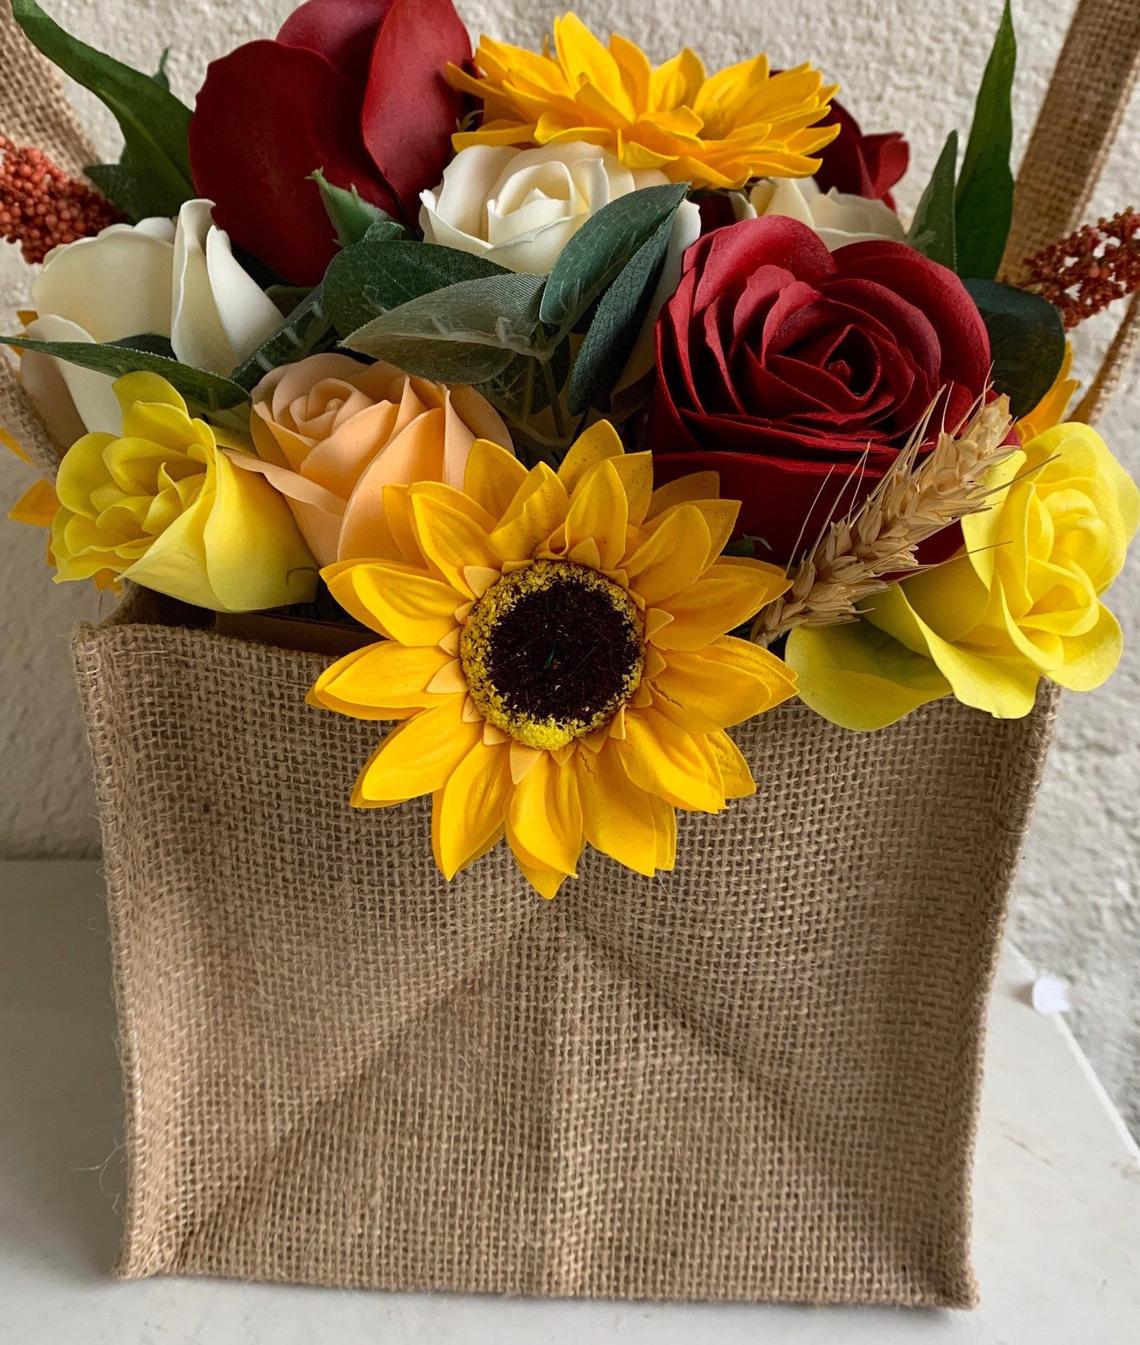 Soap flower bouquet in a posie box in hessian bag